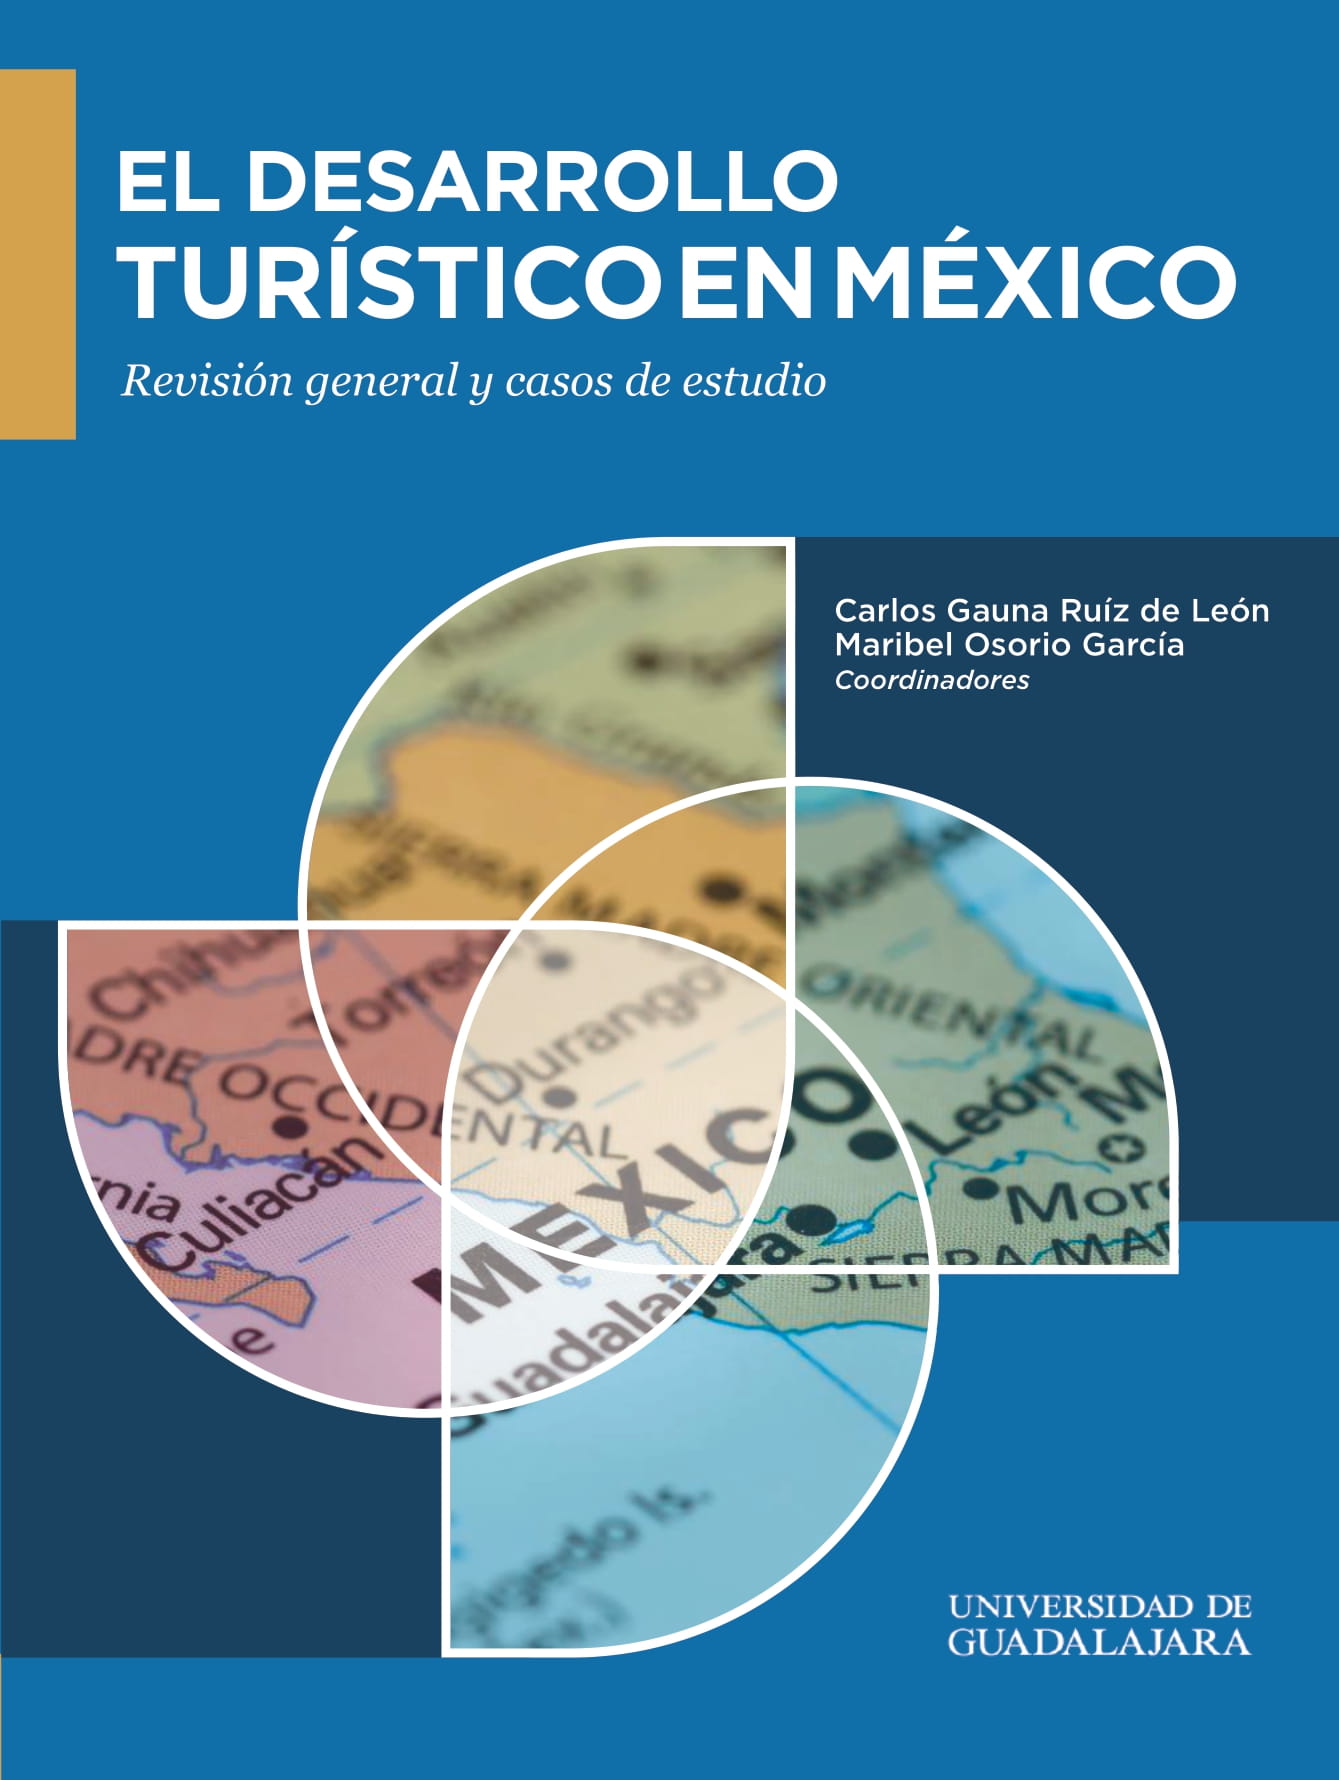 El desarrollo turístico en México. Revisión general y casos de estudio<br />
        